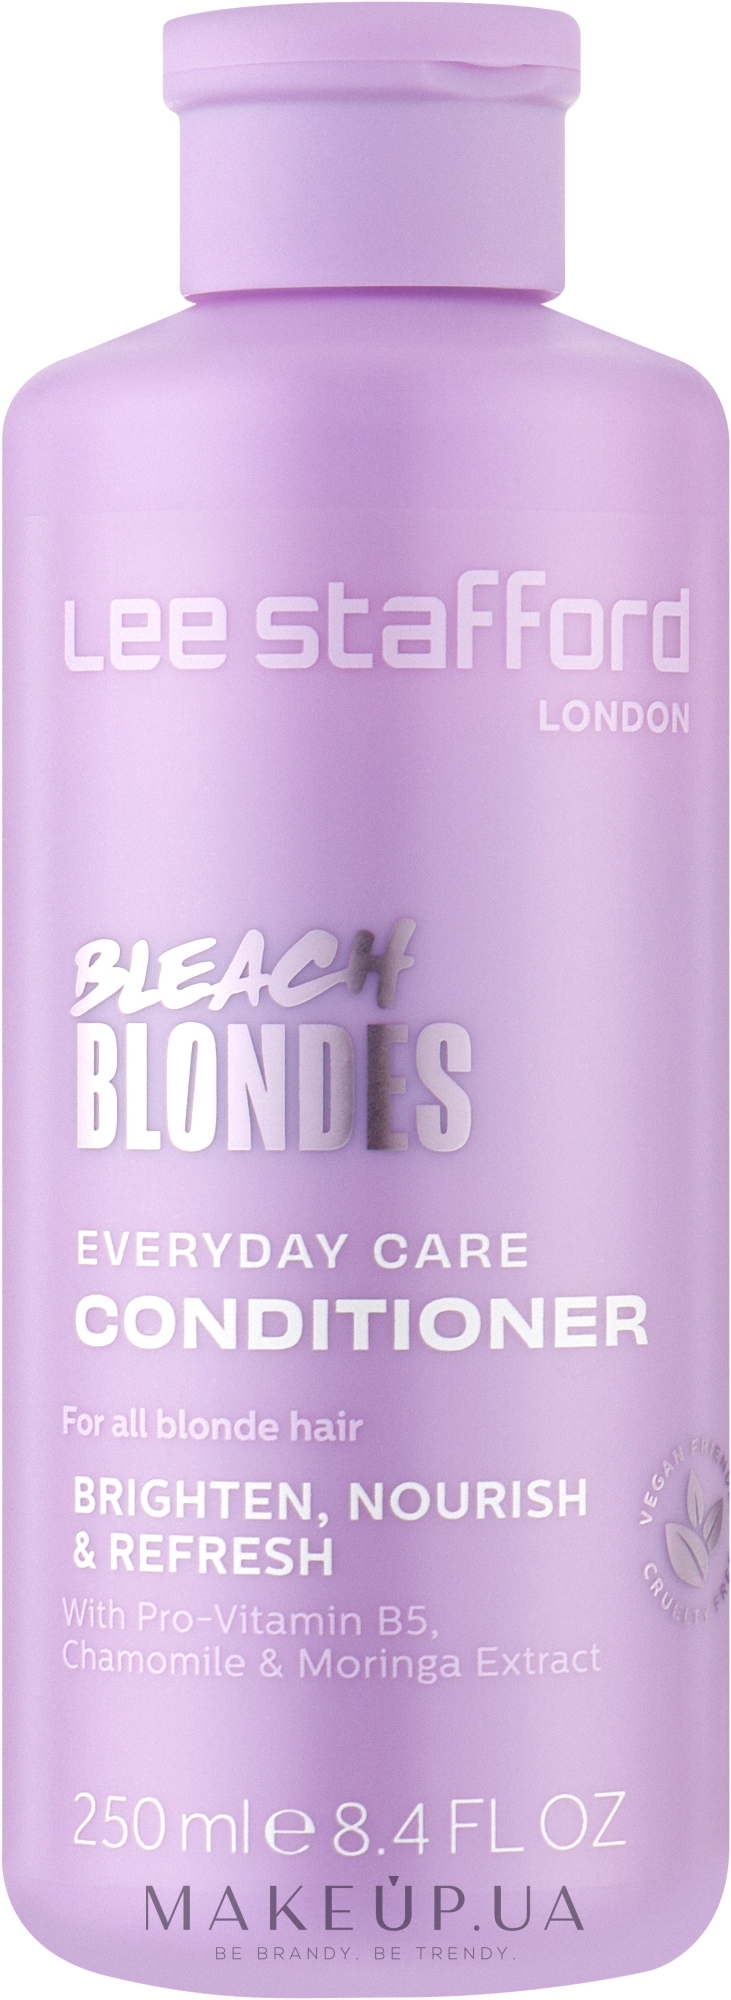 Ежедневный кондиционер для осветленных волос - Lee Stafford Bleach Blondes Everyday Care Conditioner — фото 250ml